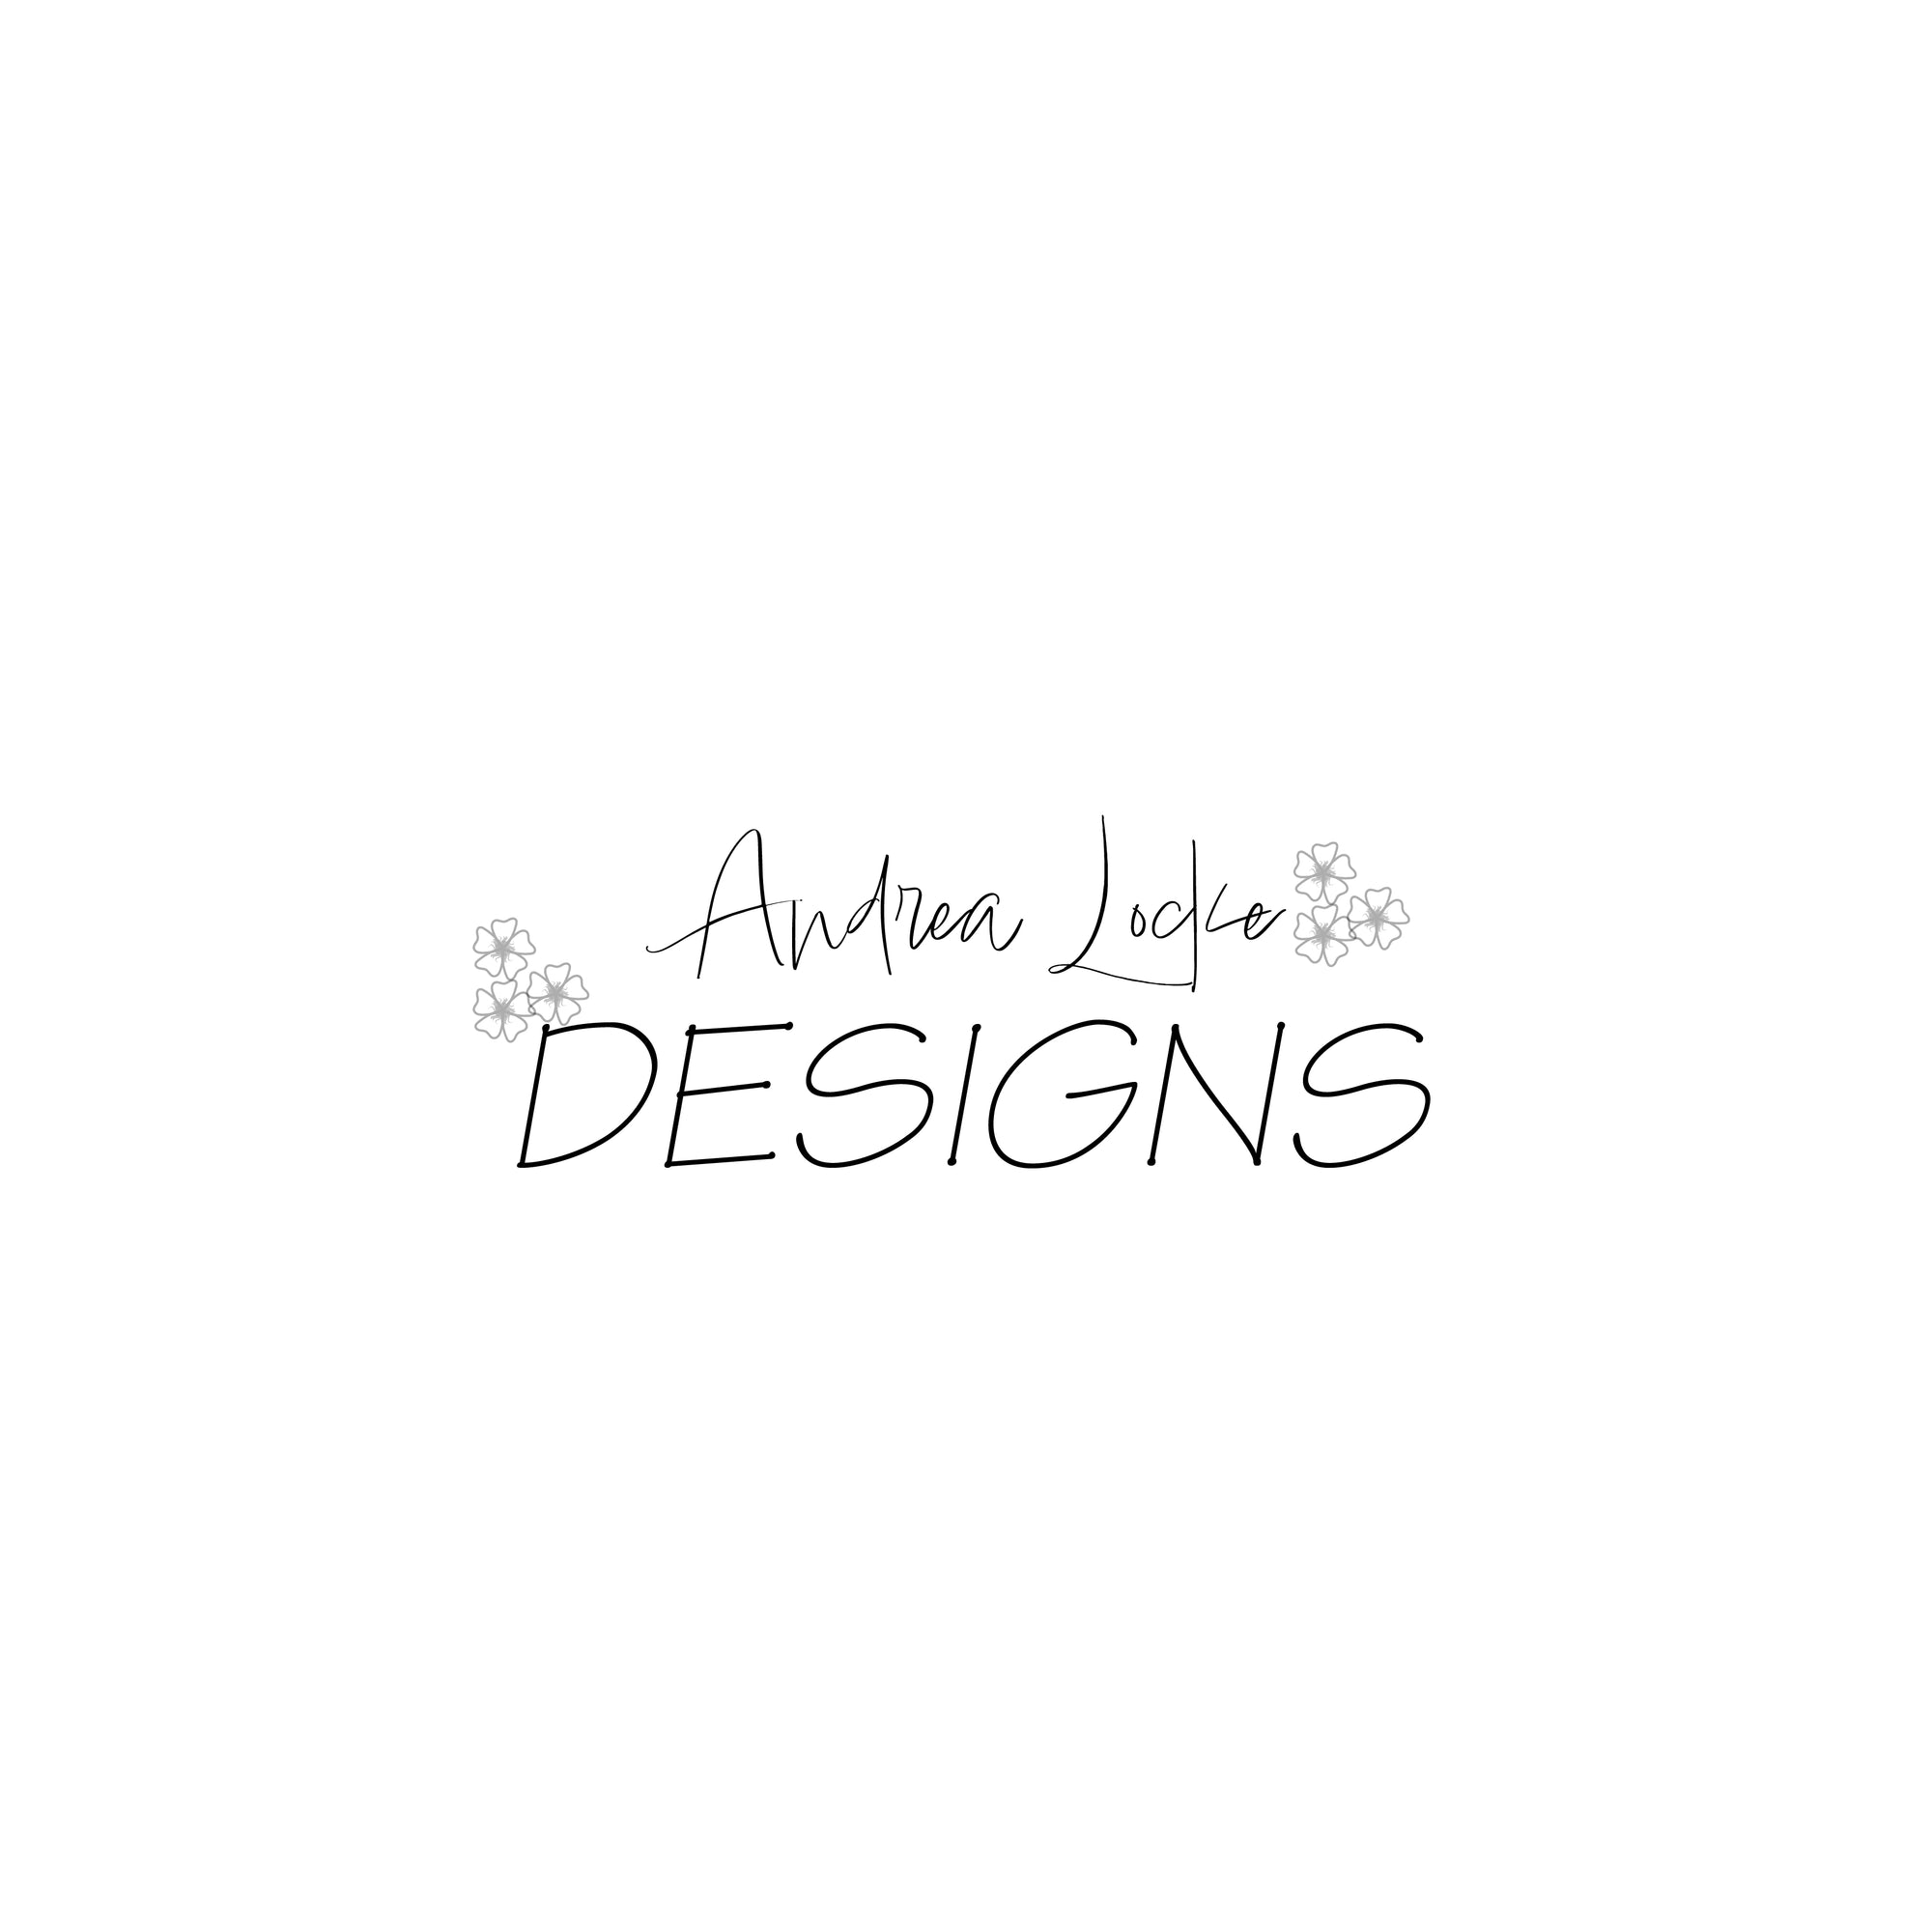 Designs by Andrea Locke Designs